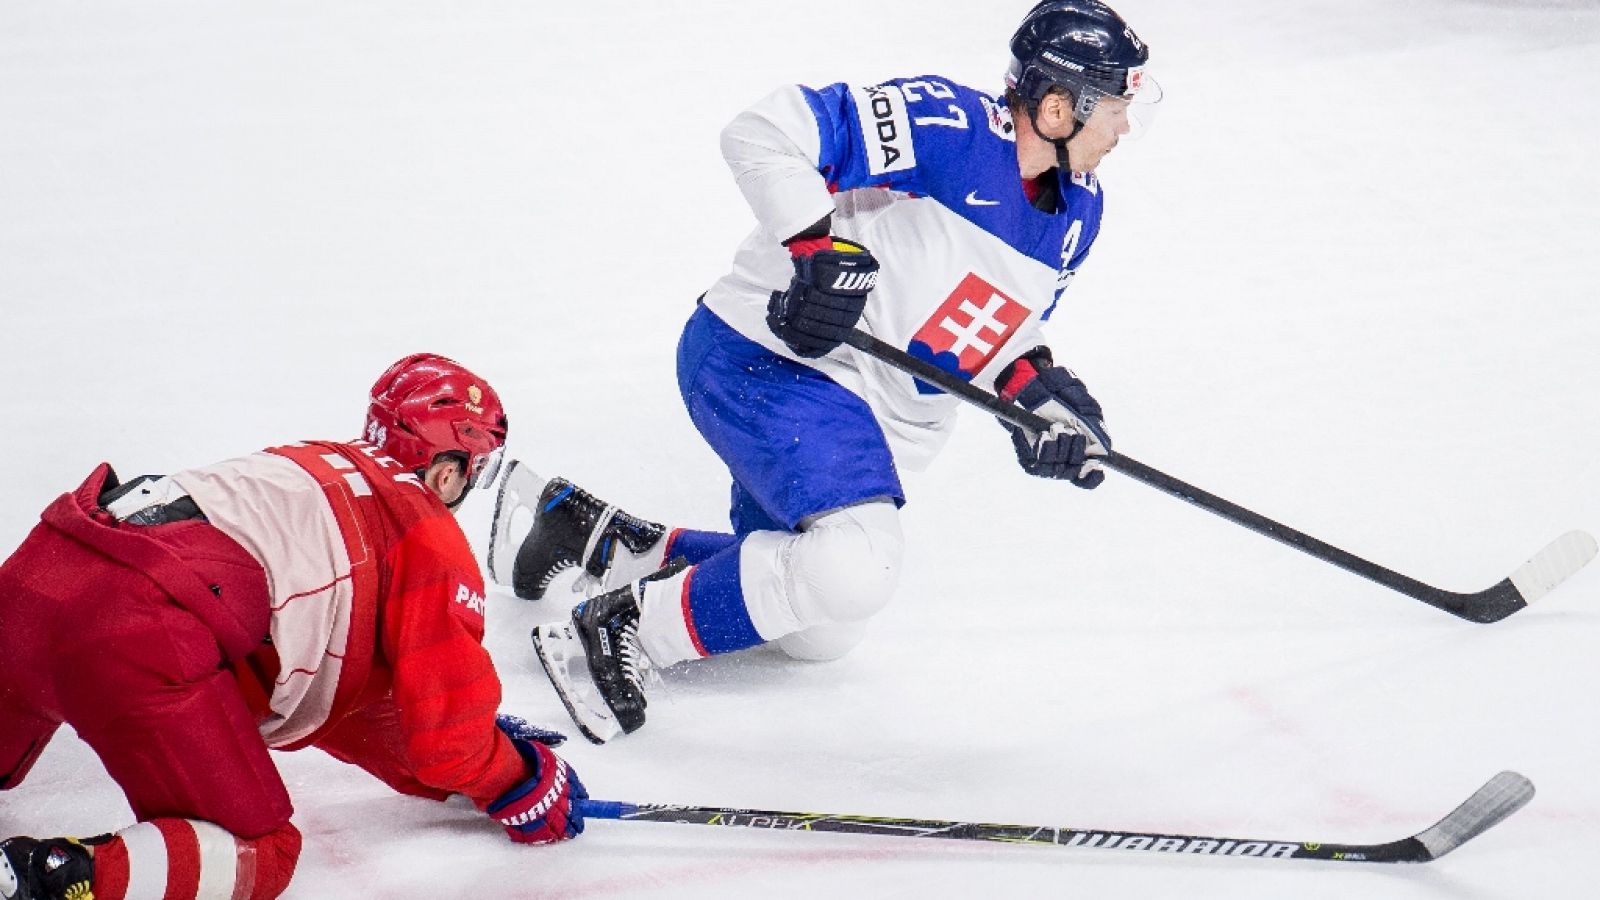 Hockey hielo - Campeonato del mundo: Rusia - Eslovaquia